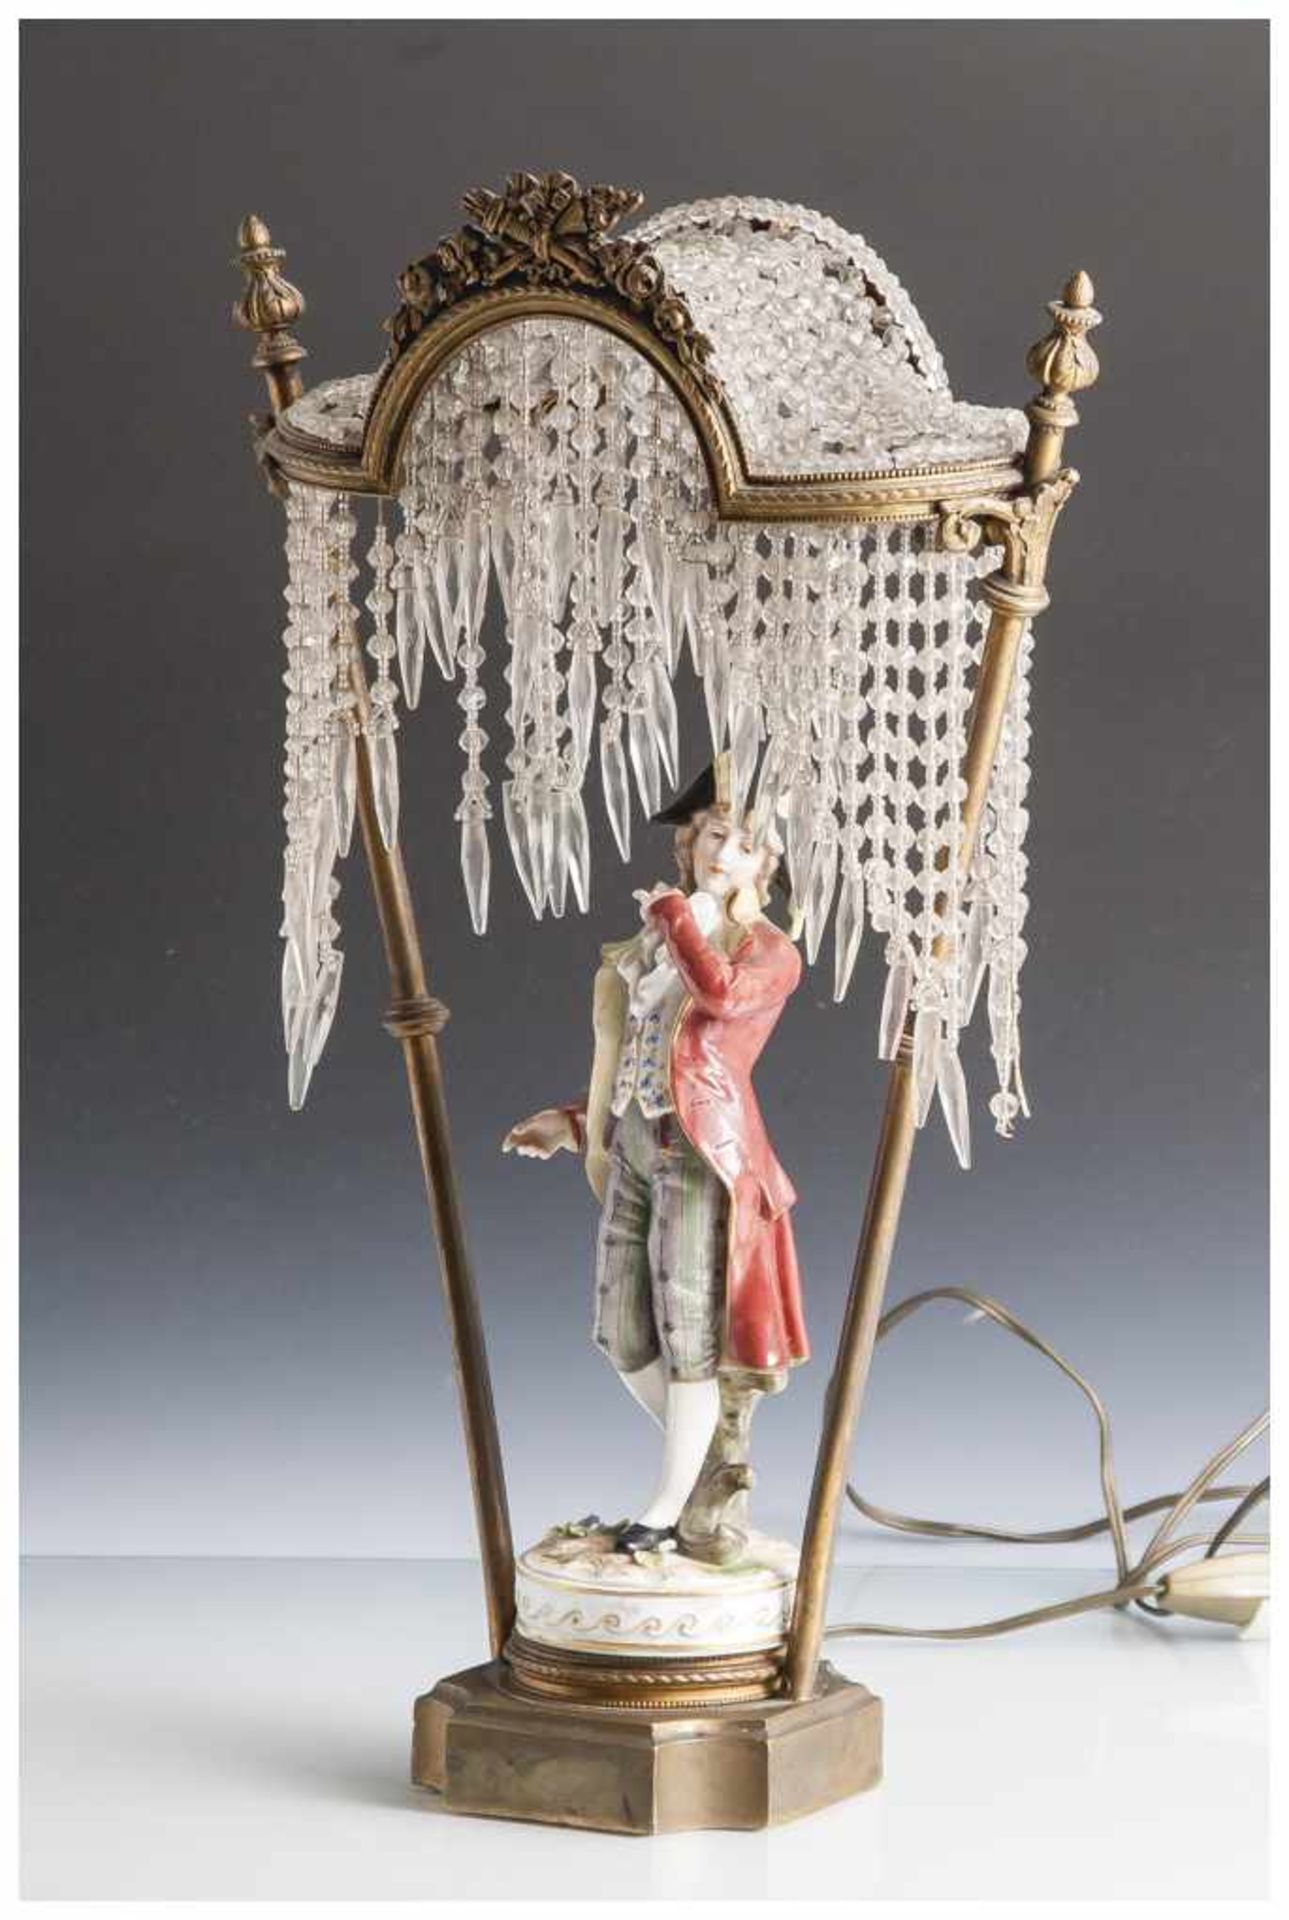 Tischlampe, Jahrhundertwende, über Gestell auf verziertem Rundsockel Porzellanfigur, Volkstedt,